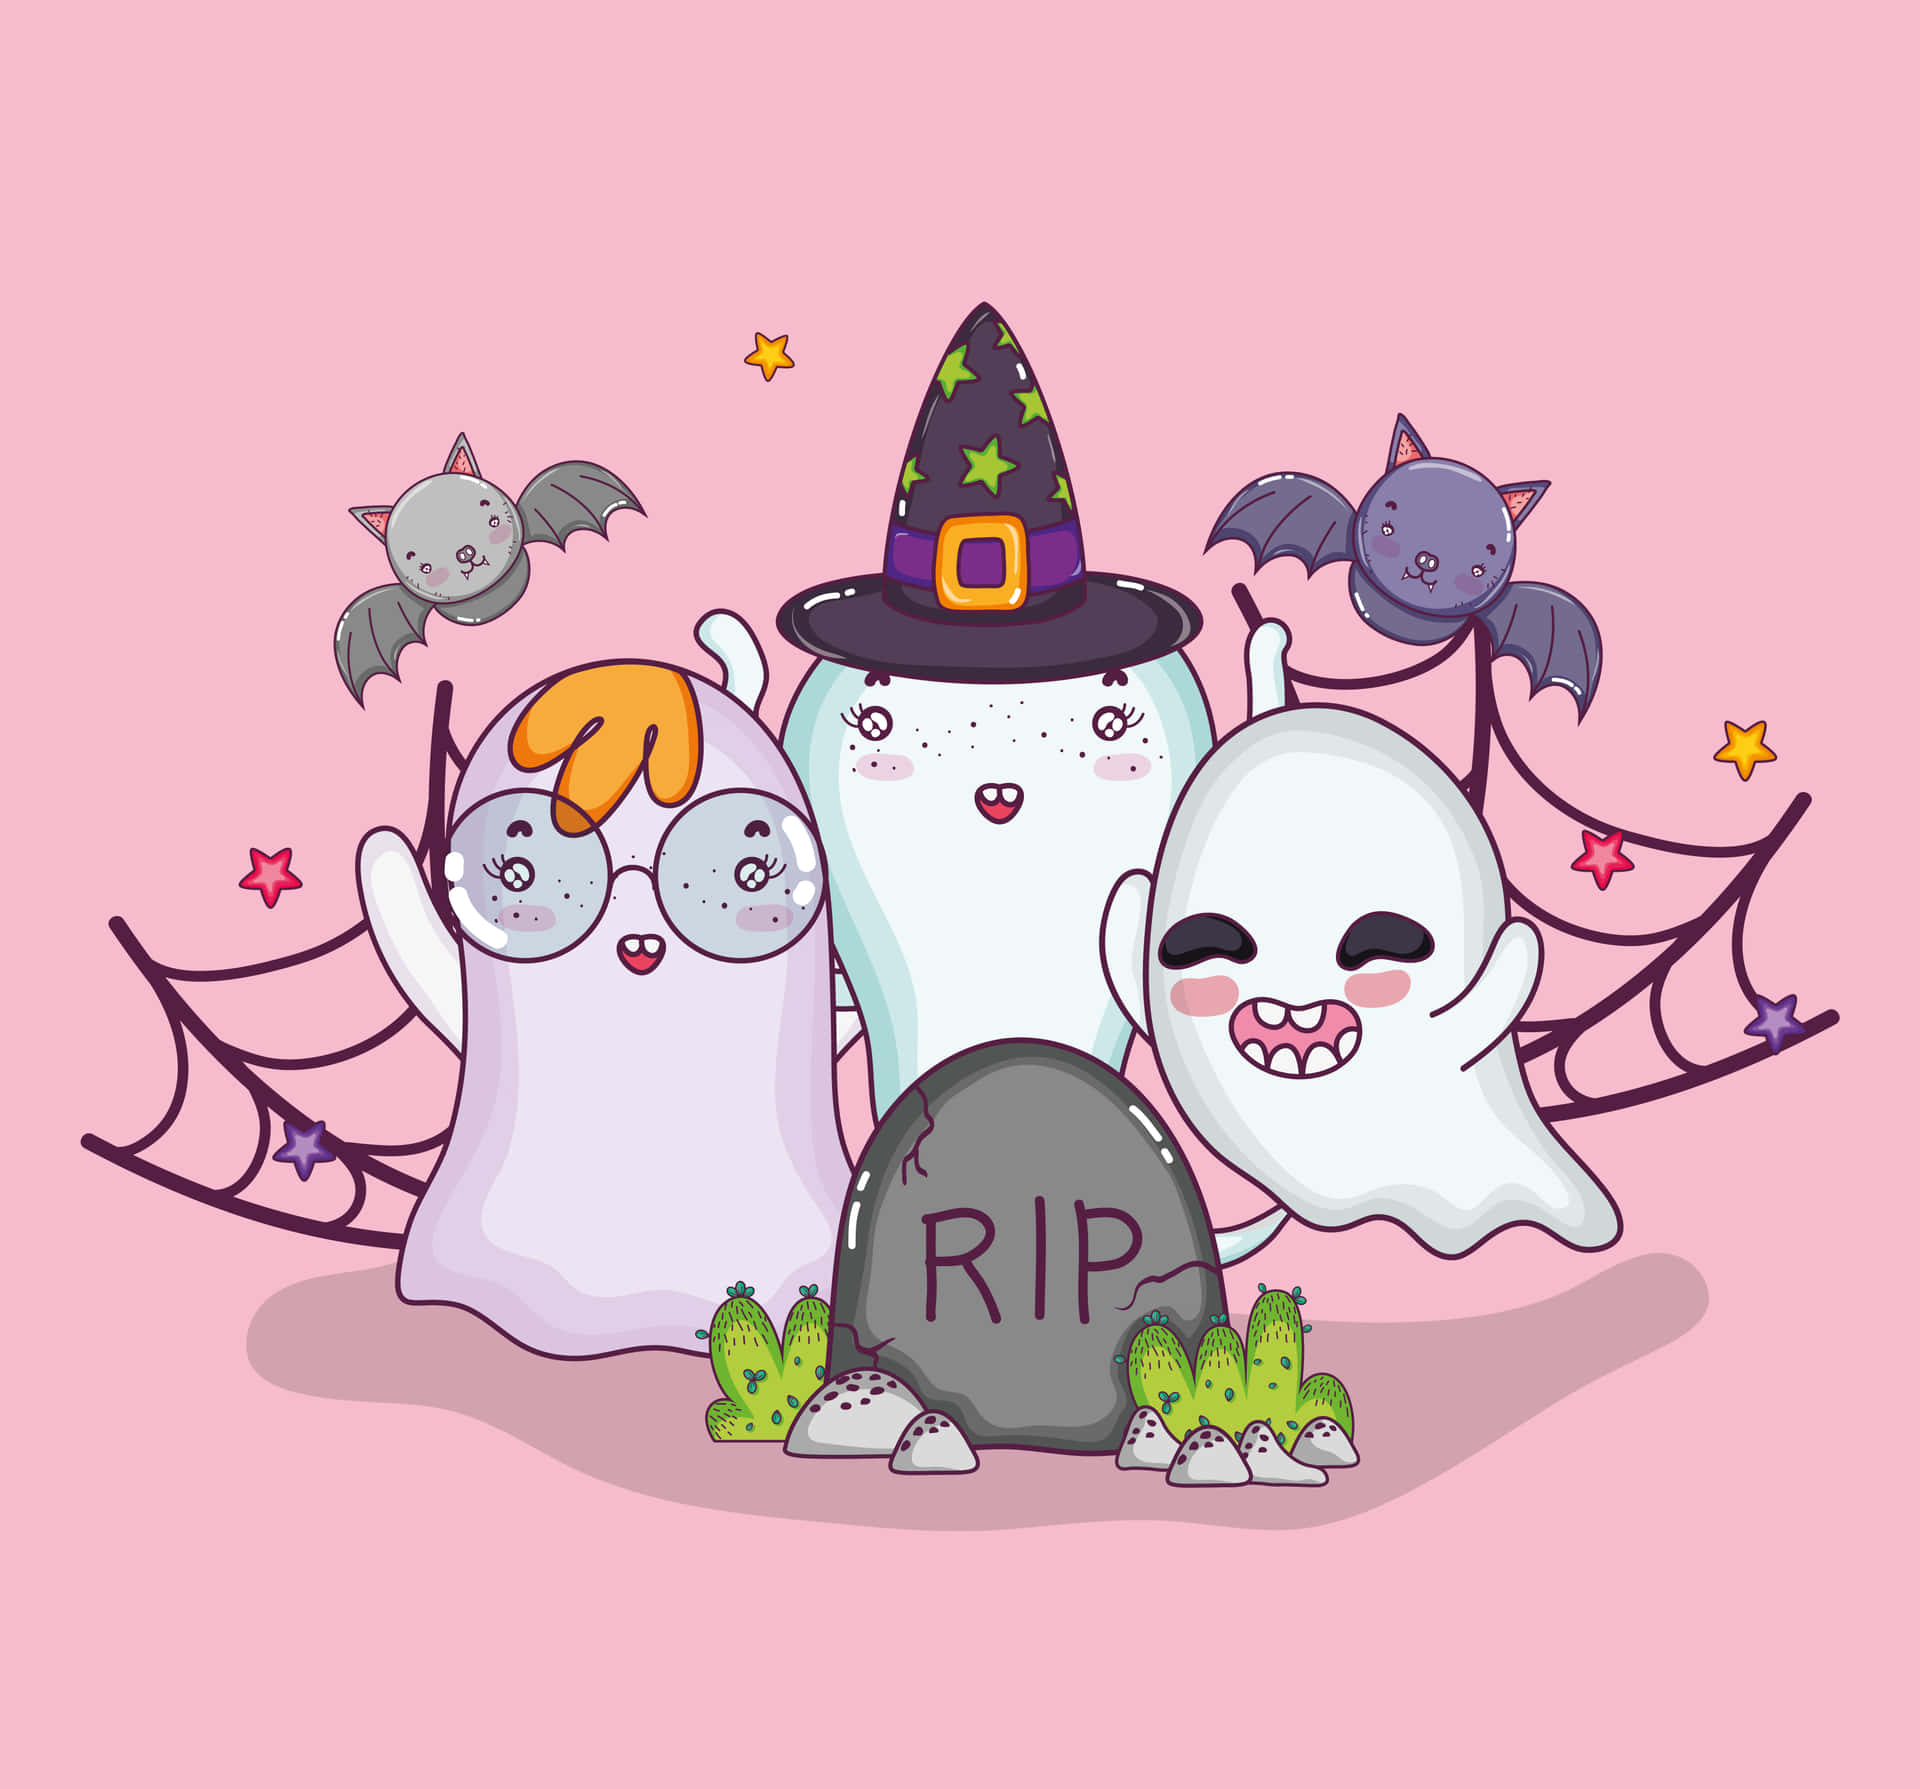 Feieredieses Süße Halloween Mit Spaß, Schrecken Und Pelzigen Freunden